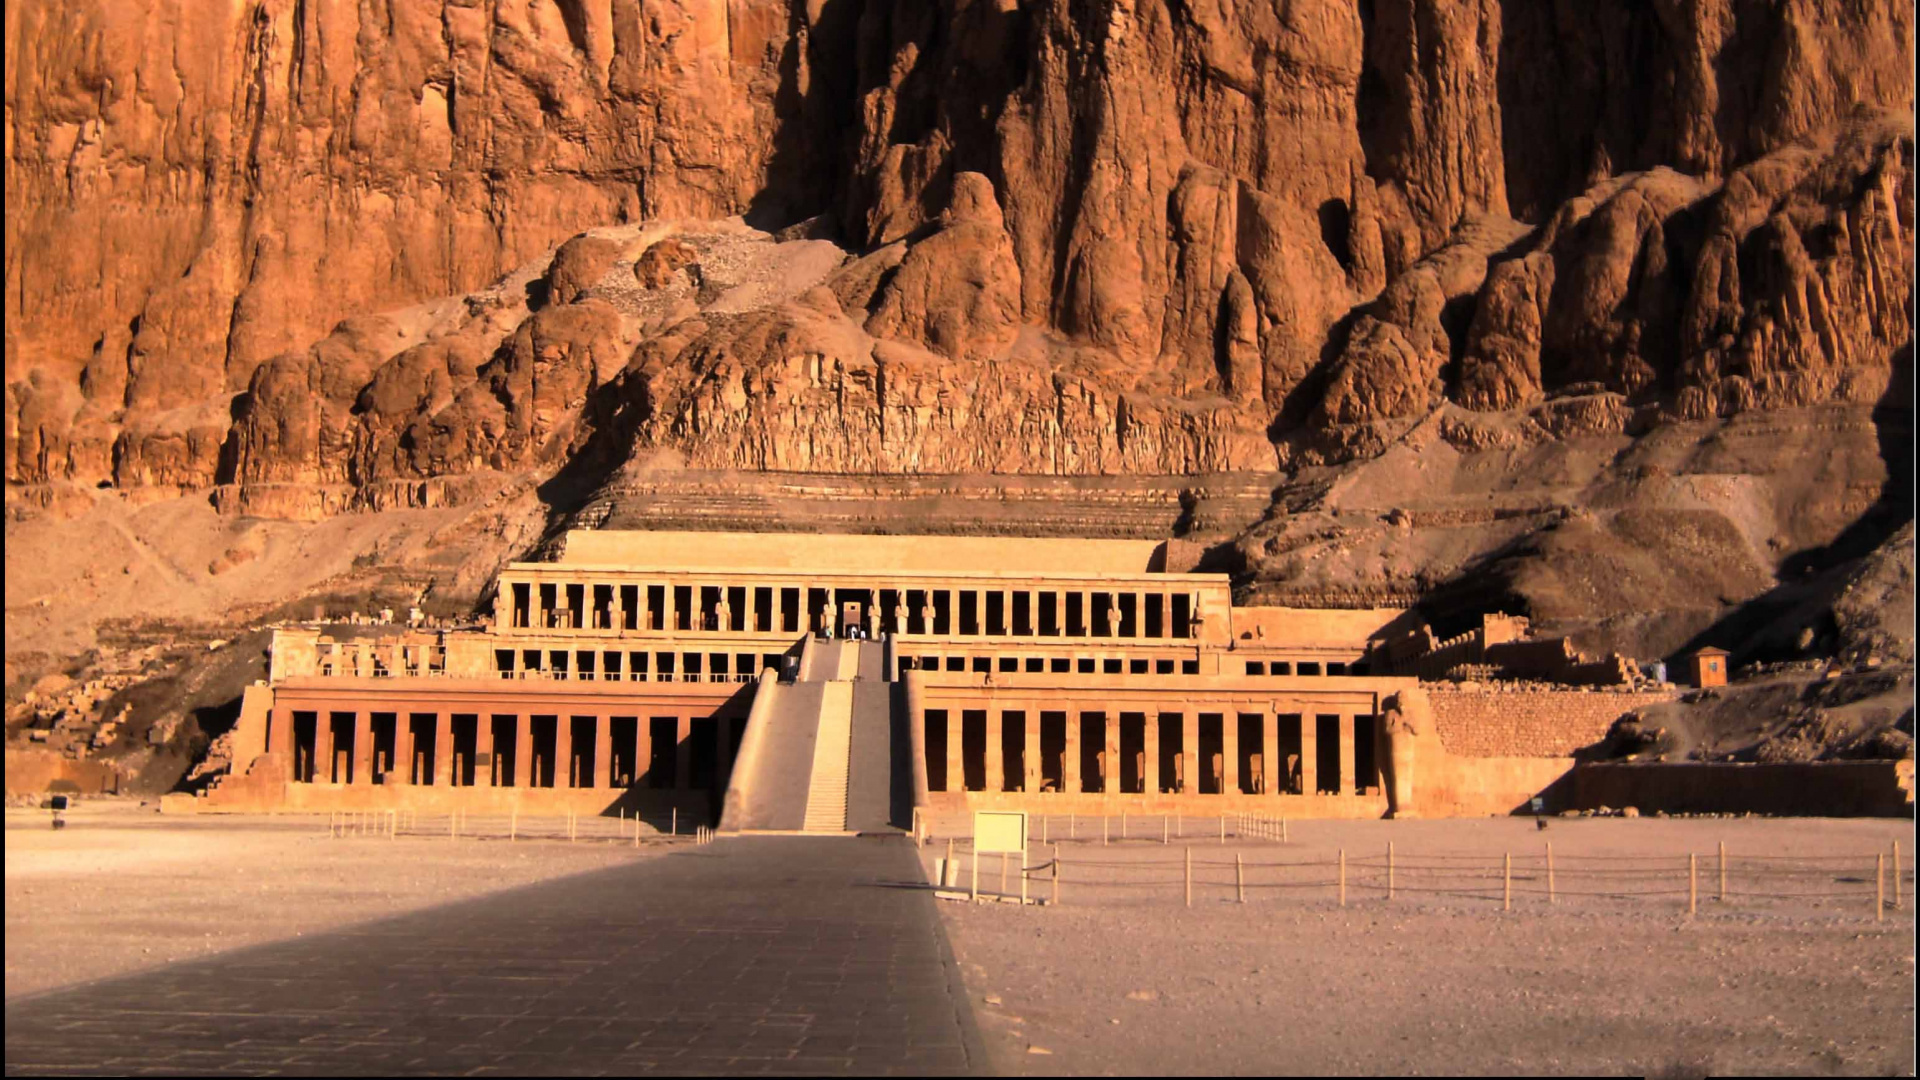 祭庙, 里程碑, 历史站, 埃及神庙, 形成 壁纸 1920x1080 允许